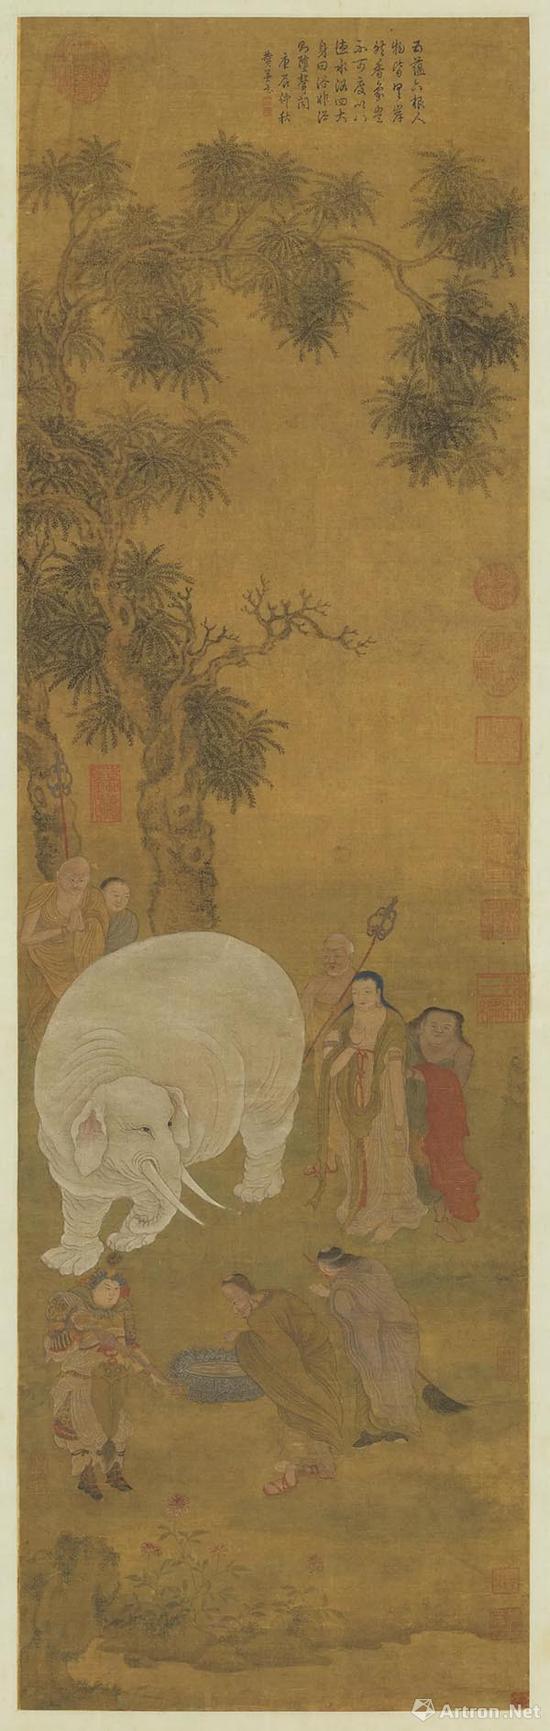 趙孟頫 浴象图 现藏于台北故宫博物院